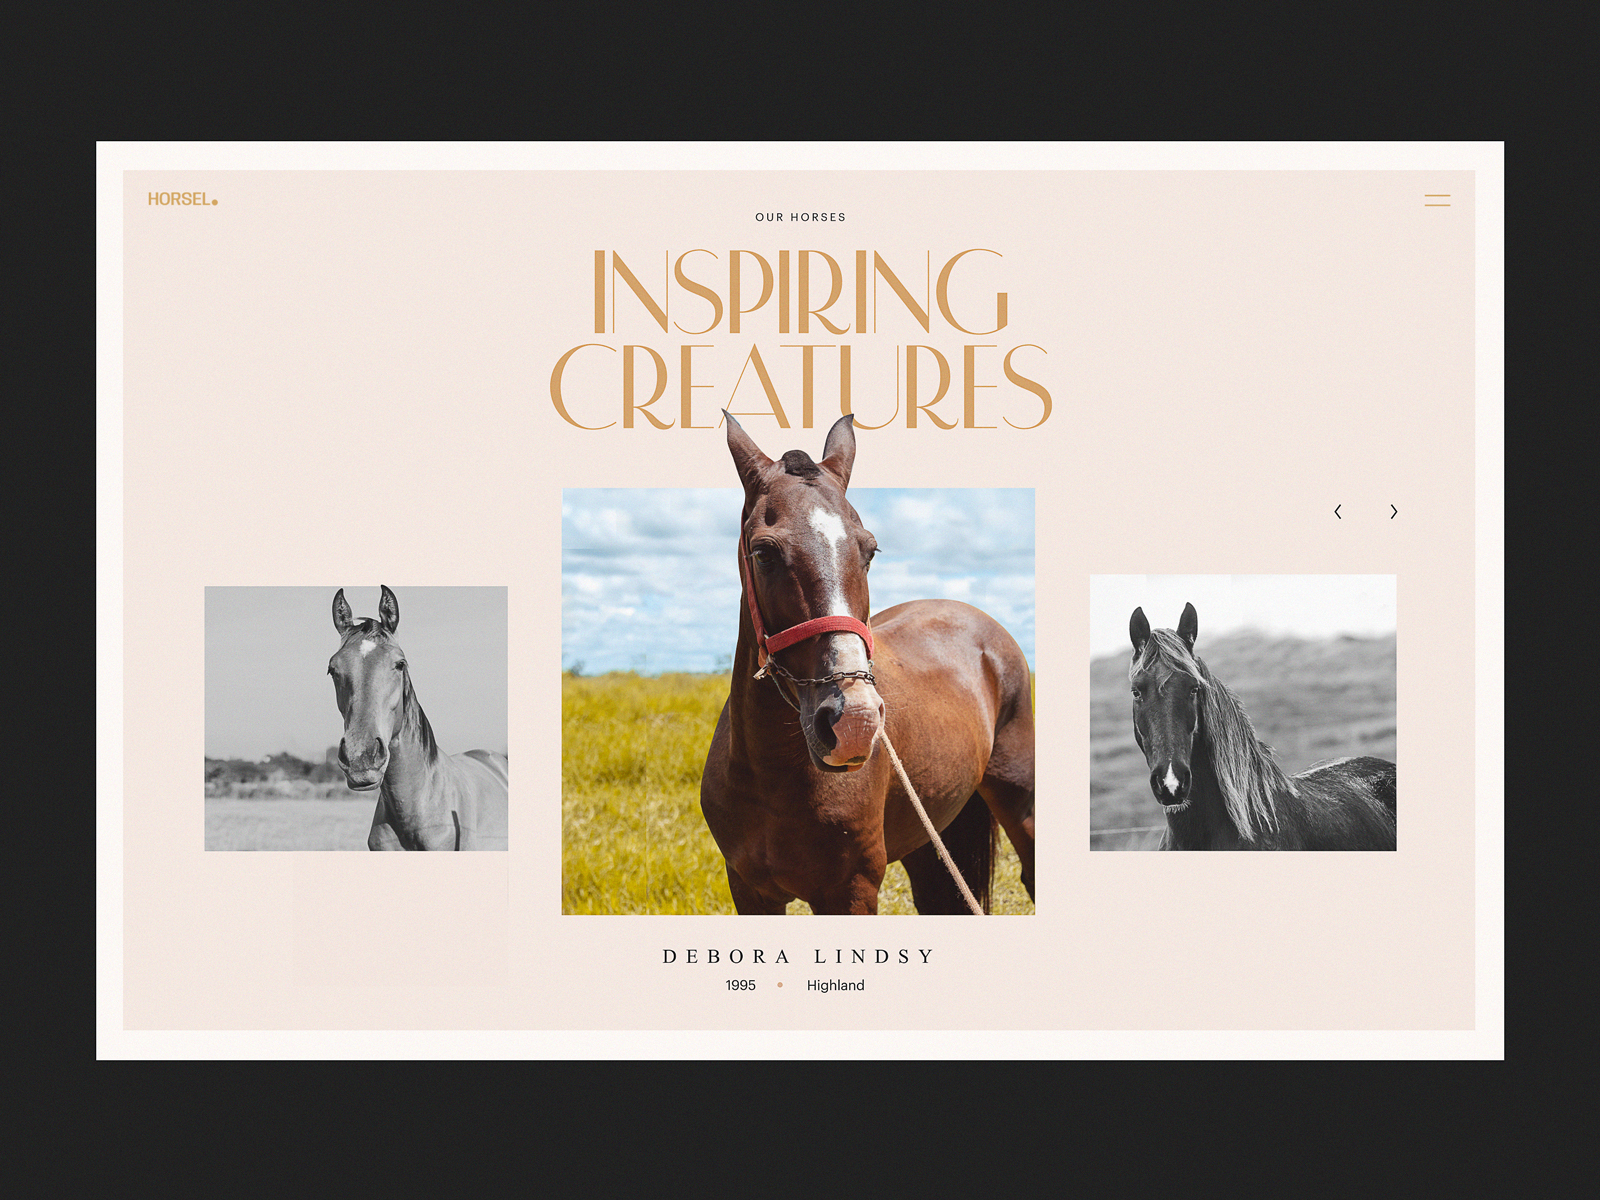 horse-riding-website-design-tubik-studio